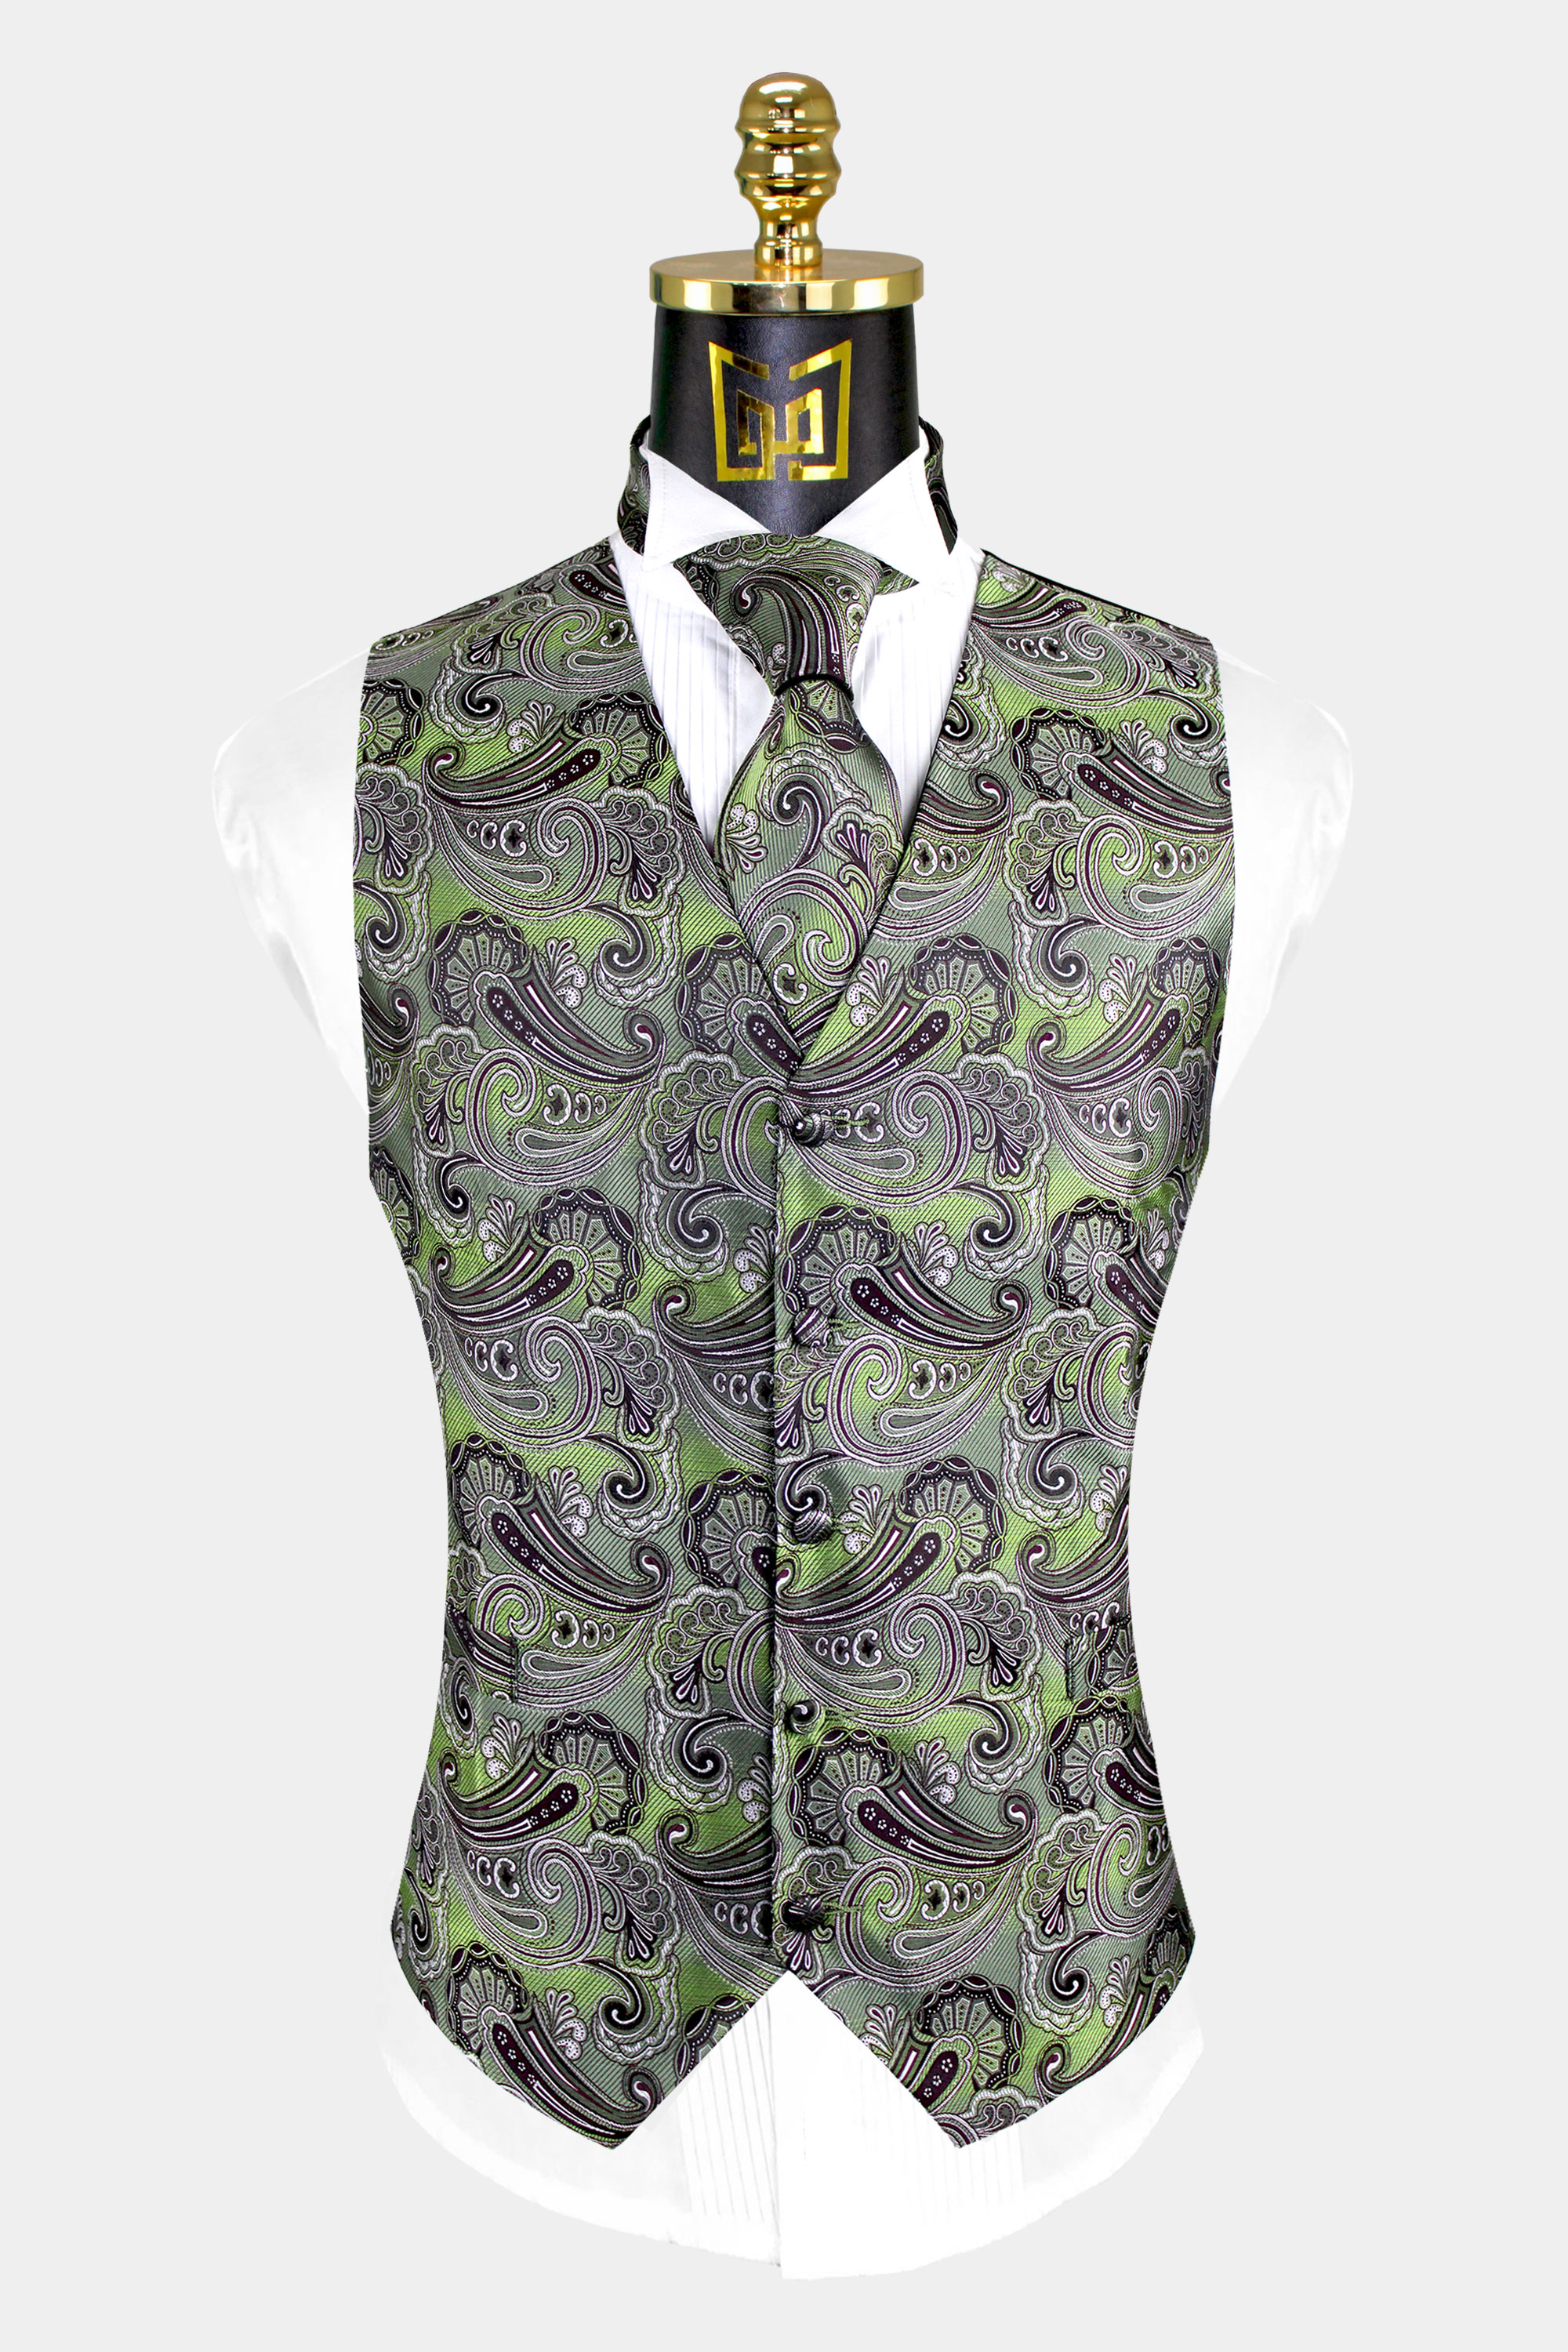 Olive-Green-Vest-and-Tie-Set-Groom-Wedding-Tuxedo-Suit-Vest-Waistcoat-Paisley-from-Gentlemansguru.com